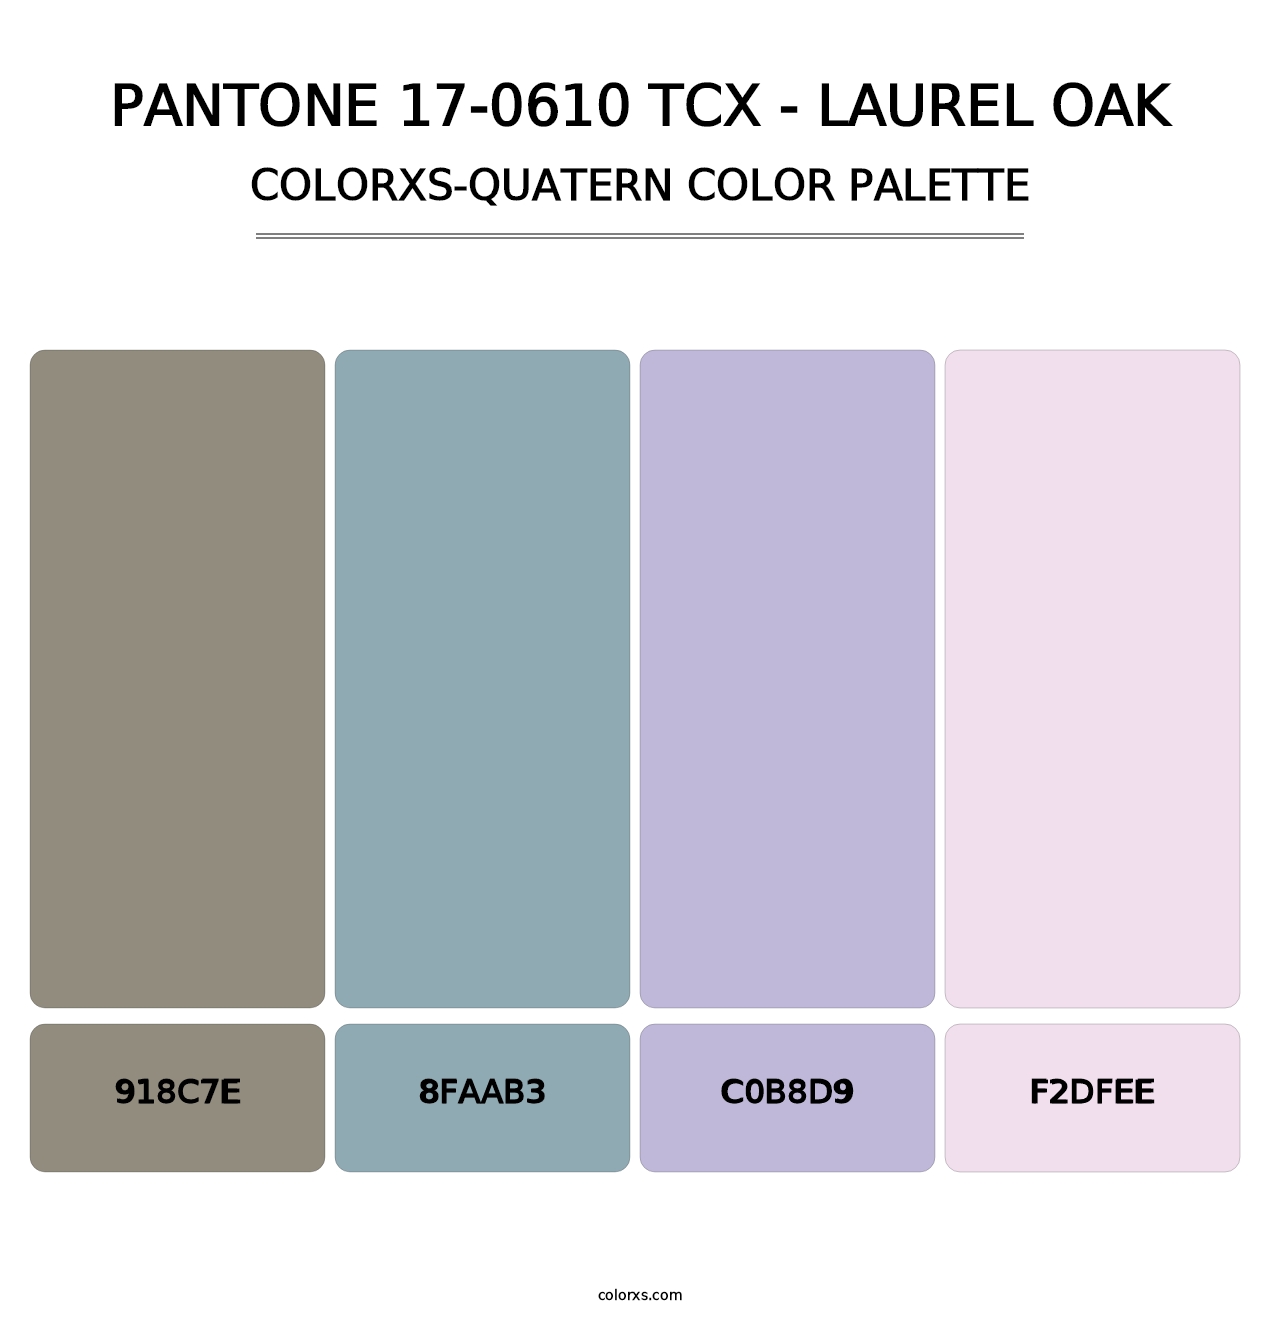 PANTONE 17-0610 TCX - Laurel Oak - Colorxs Quatern Palette